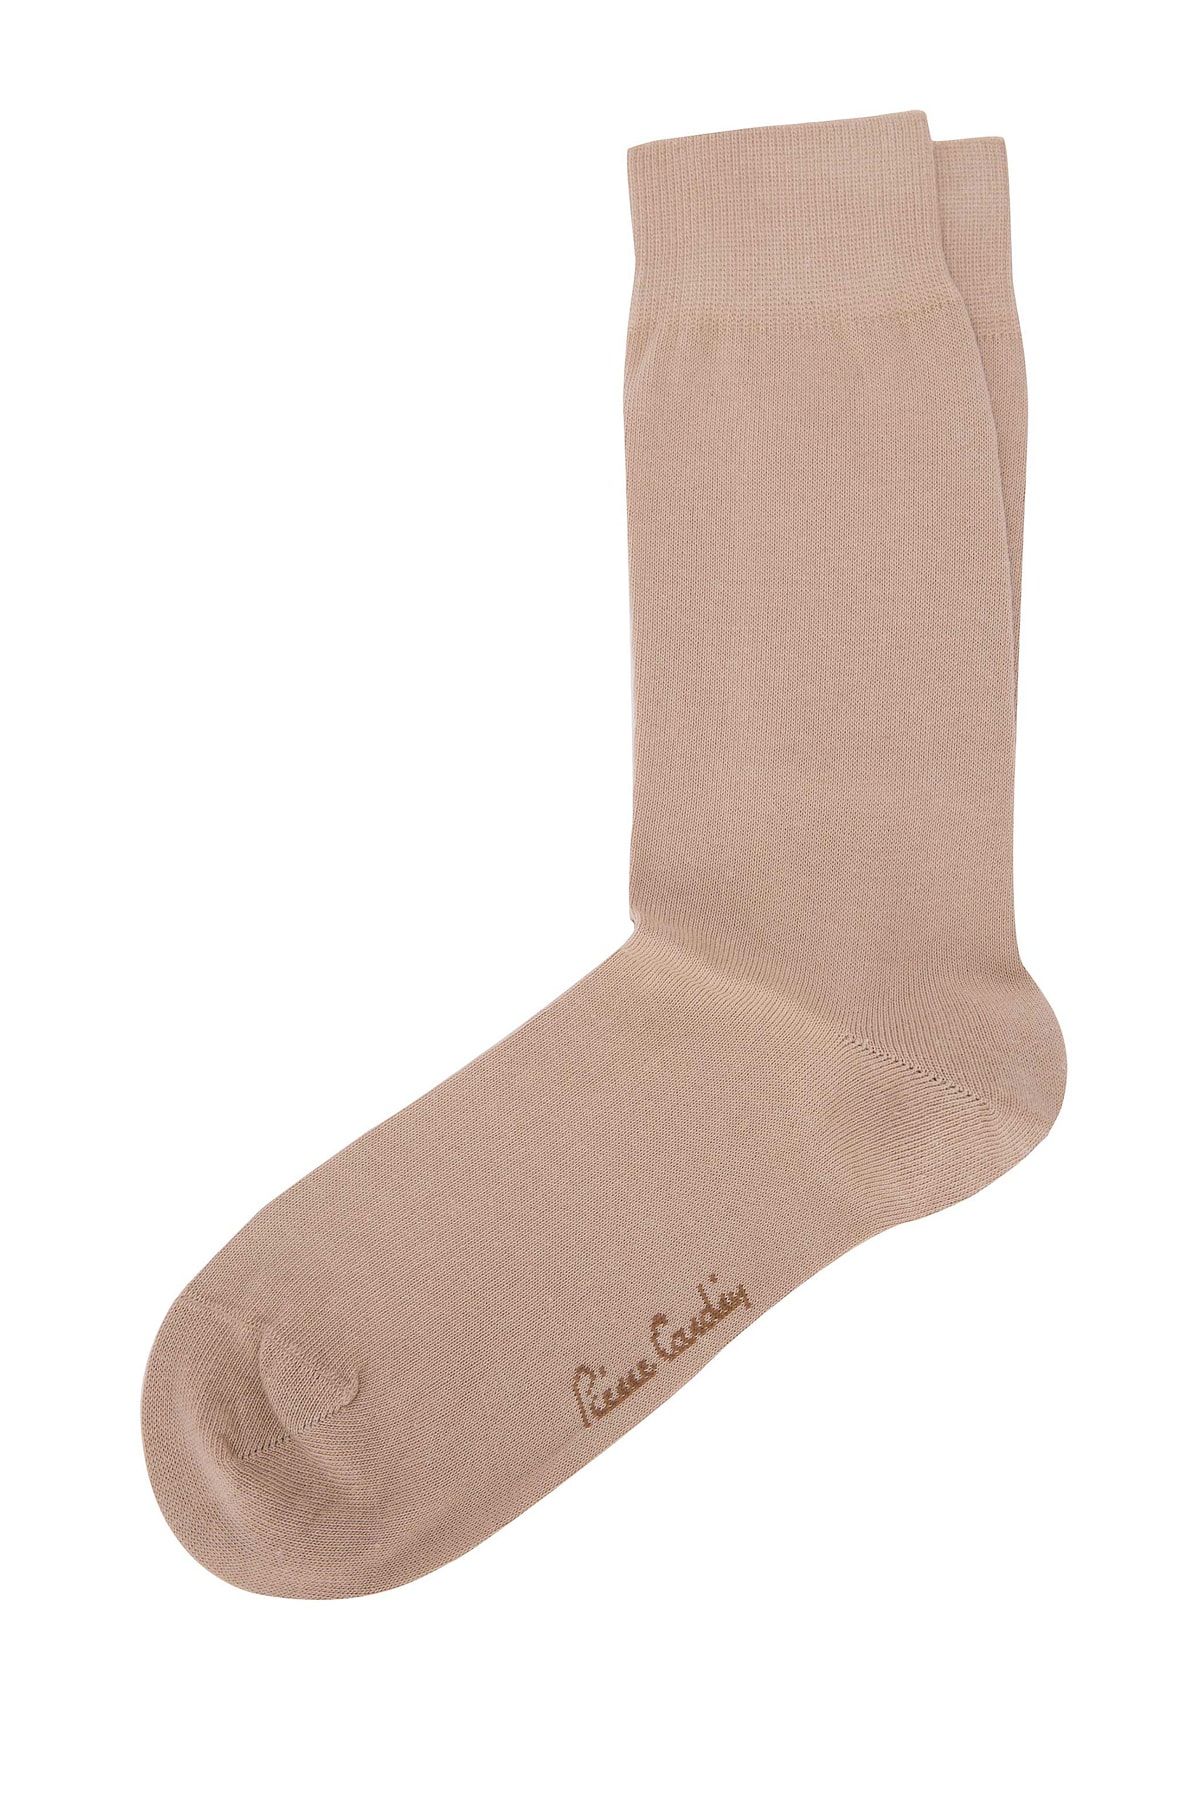 Pierre Cardin Erkek Bej Çorap A021AK013.000.O20-18K